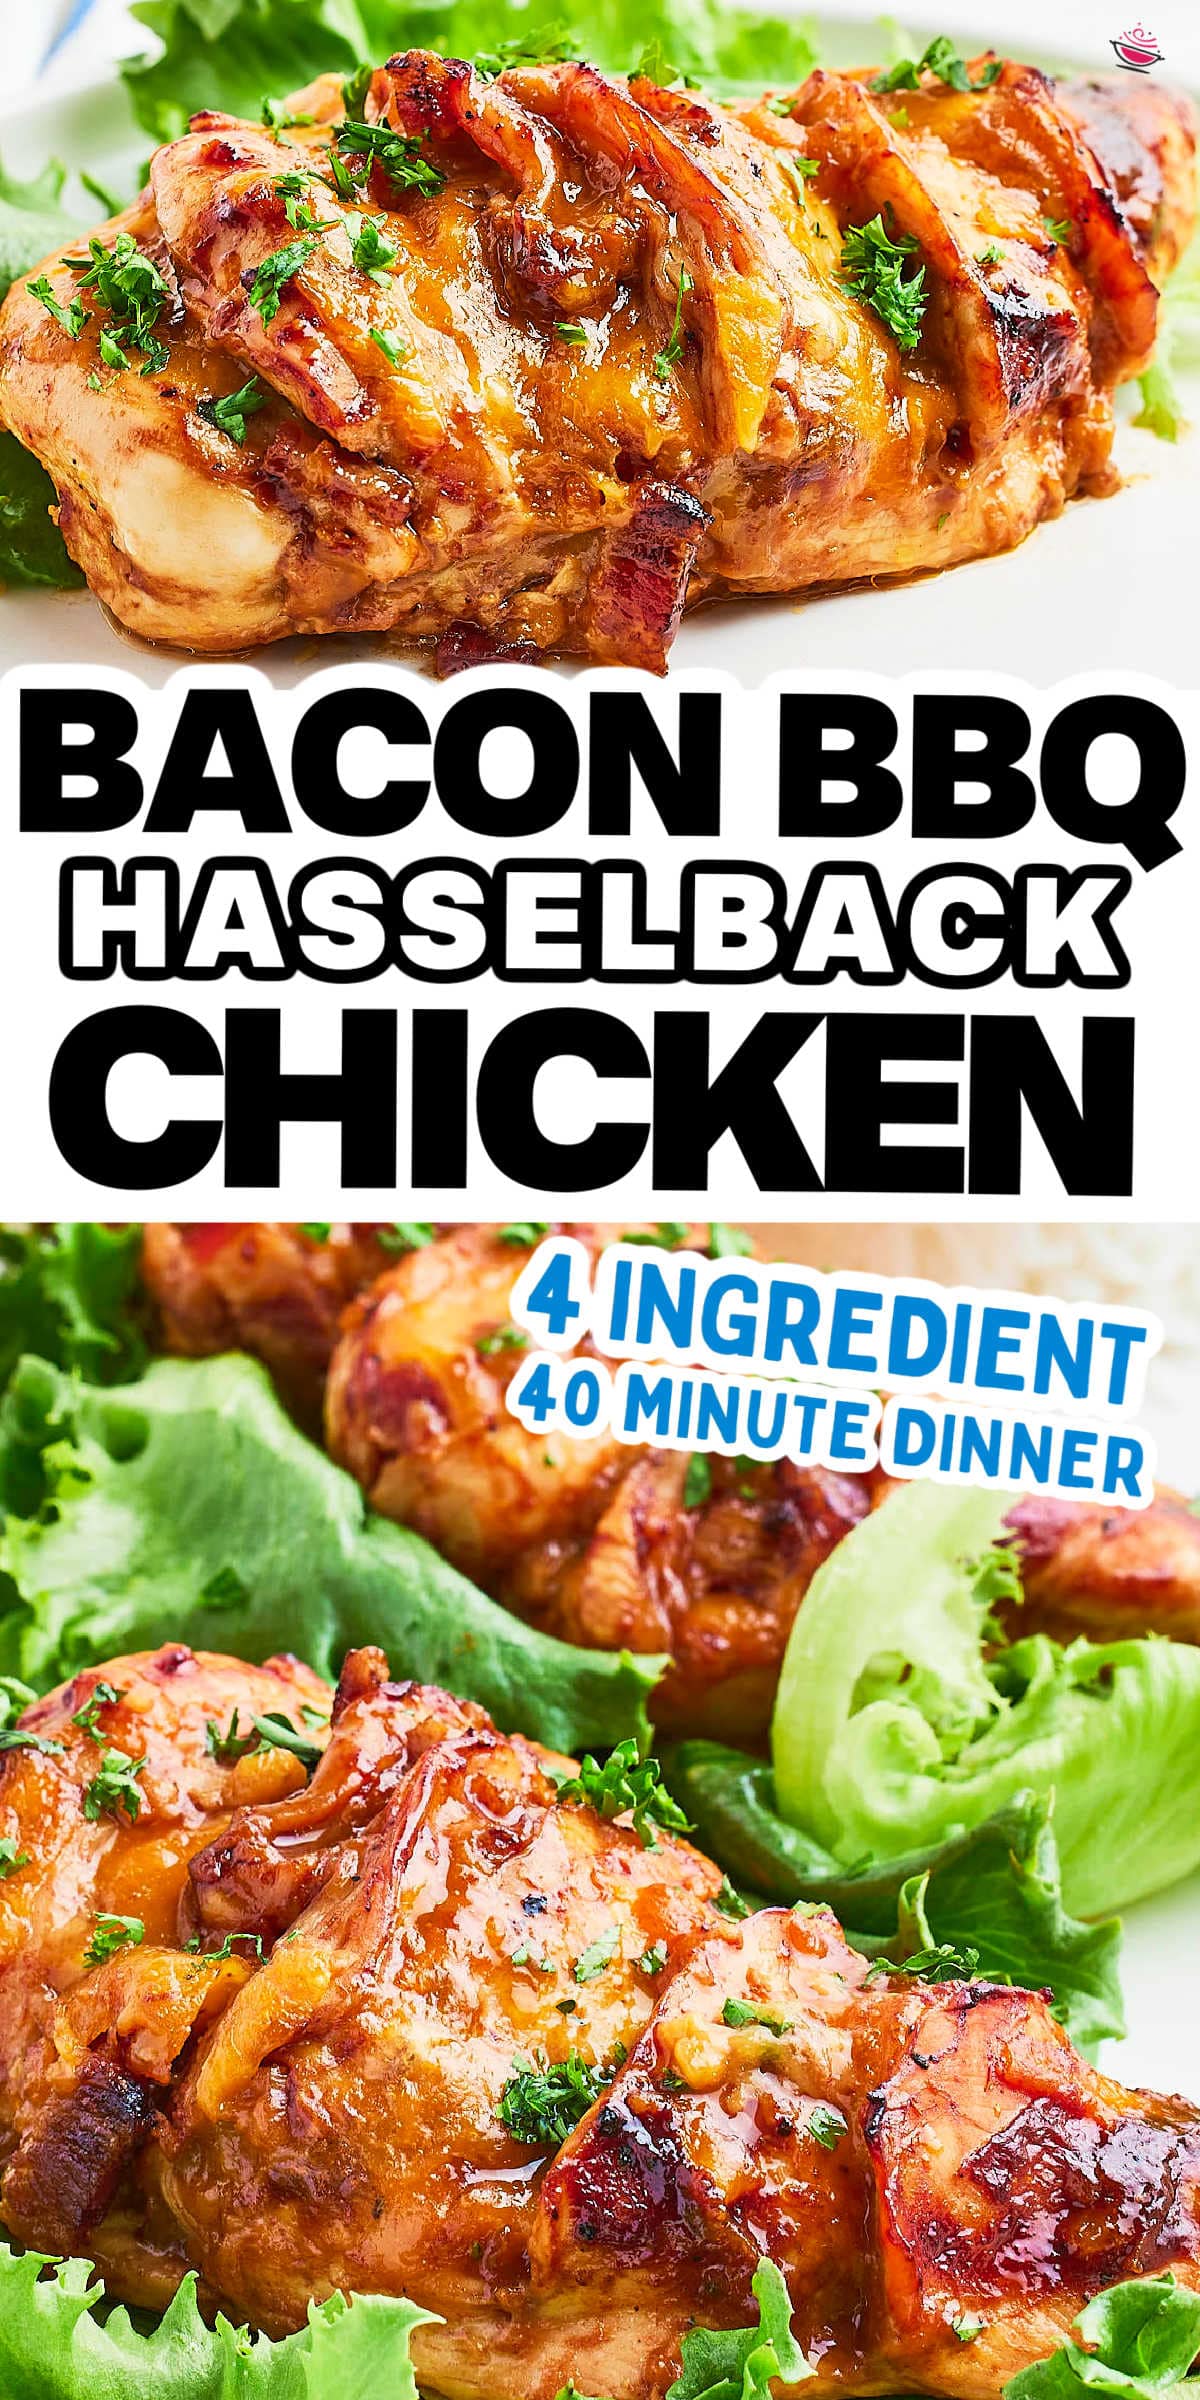 试试我们的简单而美味4-ingredient Hasselback鸡食谱!从烧烤酱,挤满了风味干酪和切碎的培根肉。适合平时晚餐,但足够令人印象深刻的客人。# cheerfulcook # HasselbackChicken # Chic江南娱乐app网址苹果kenRecipes # EasyDinner #通过@cheerfulcook chickendinnergydF4y2Ba